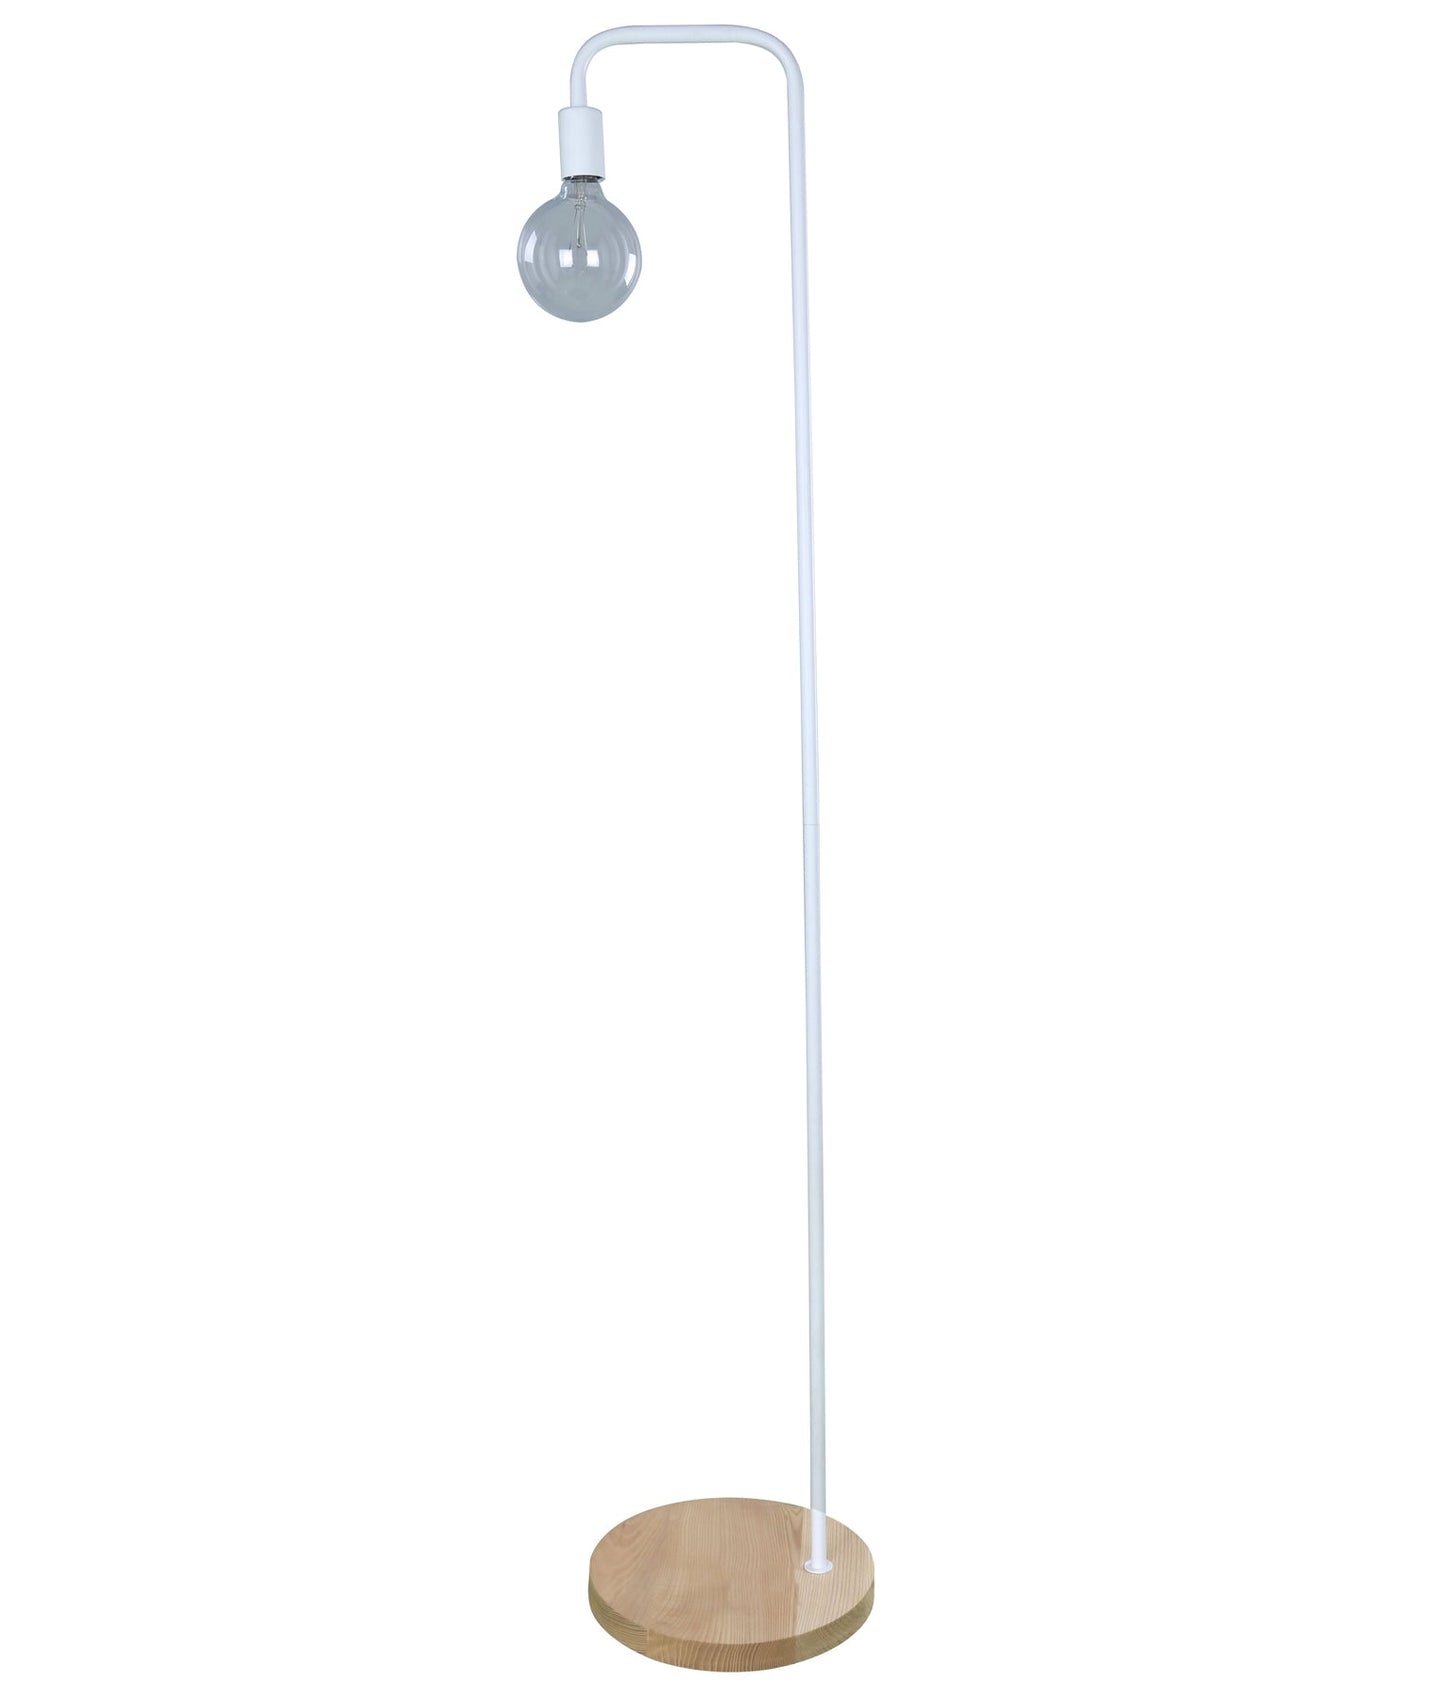 SLIM: Minimalist Wood Base Slim Floor Lamps